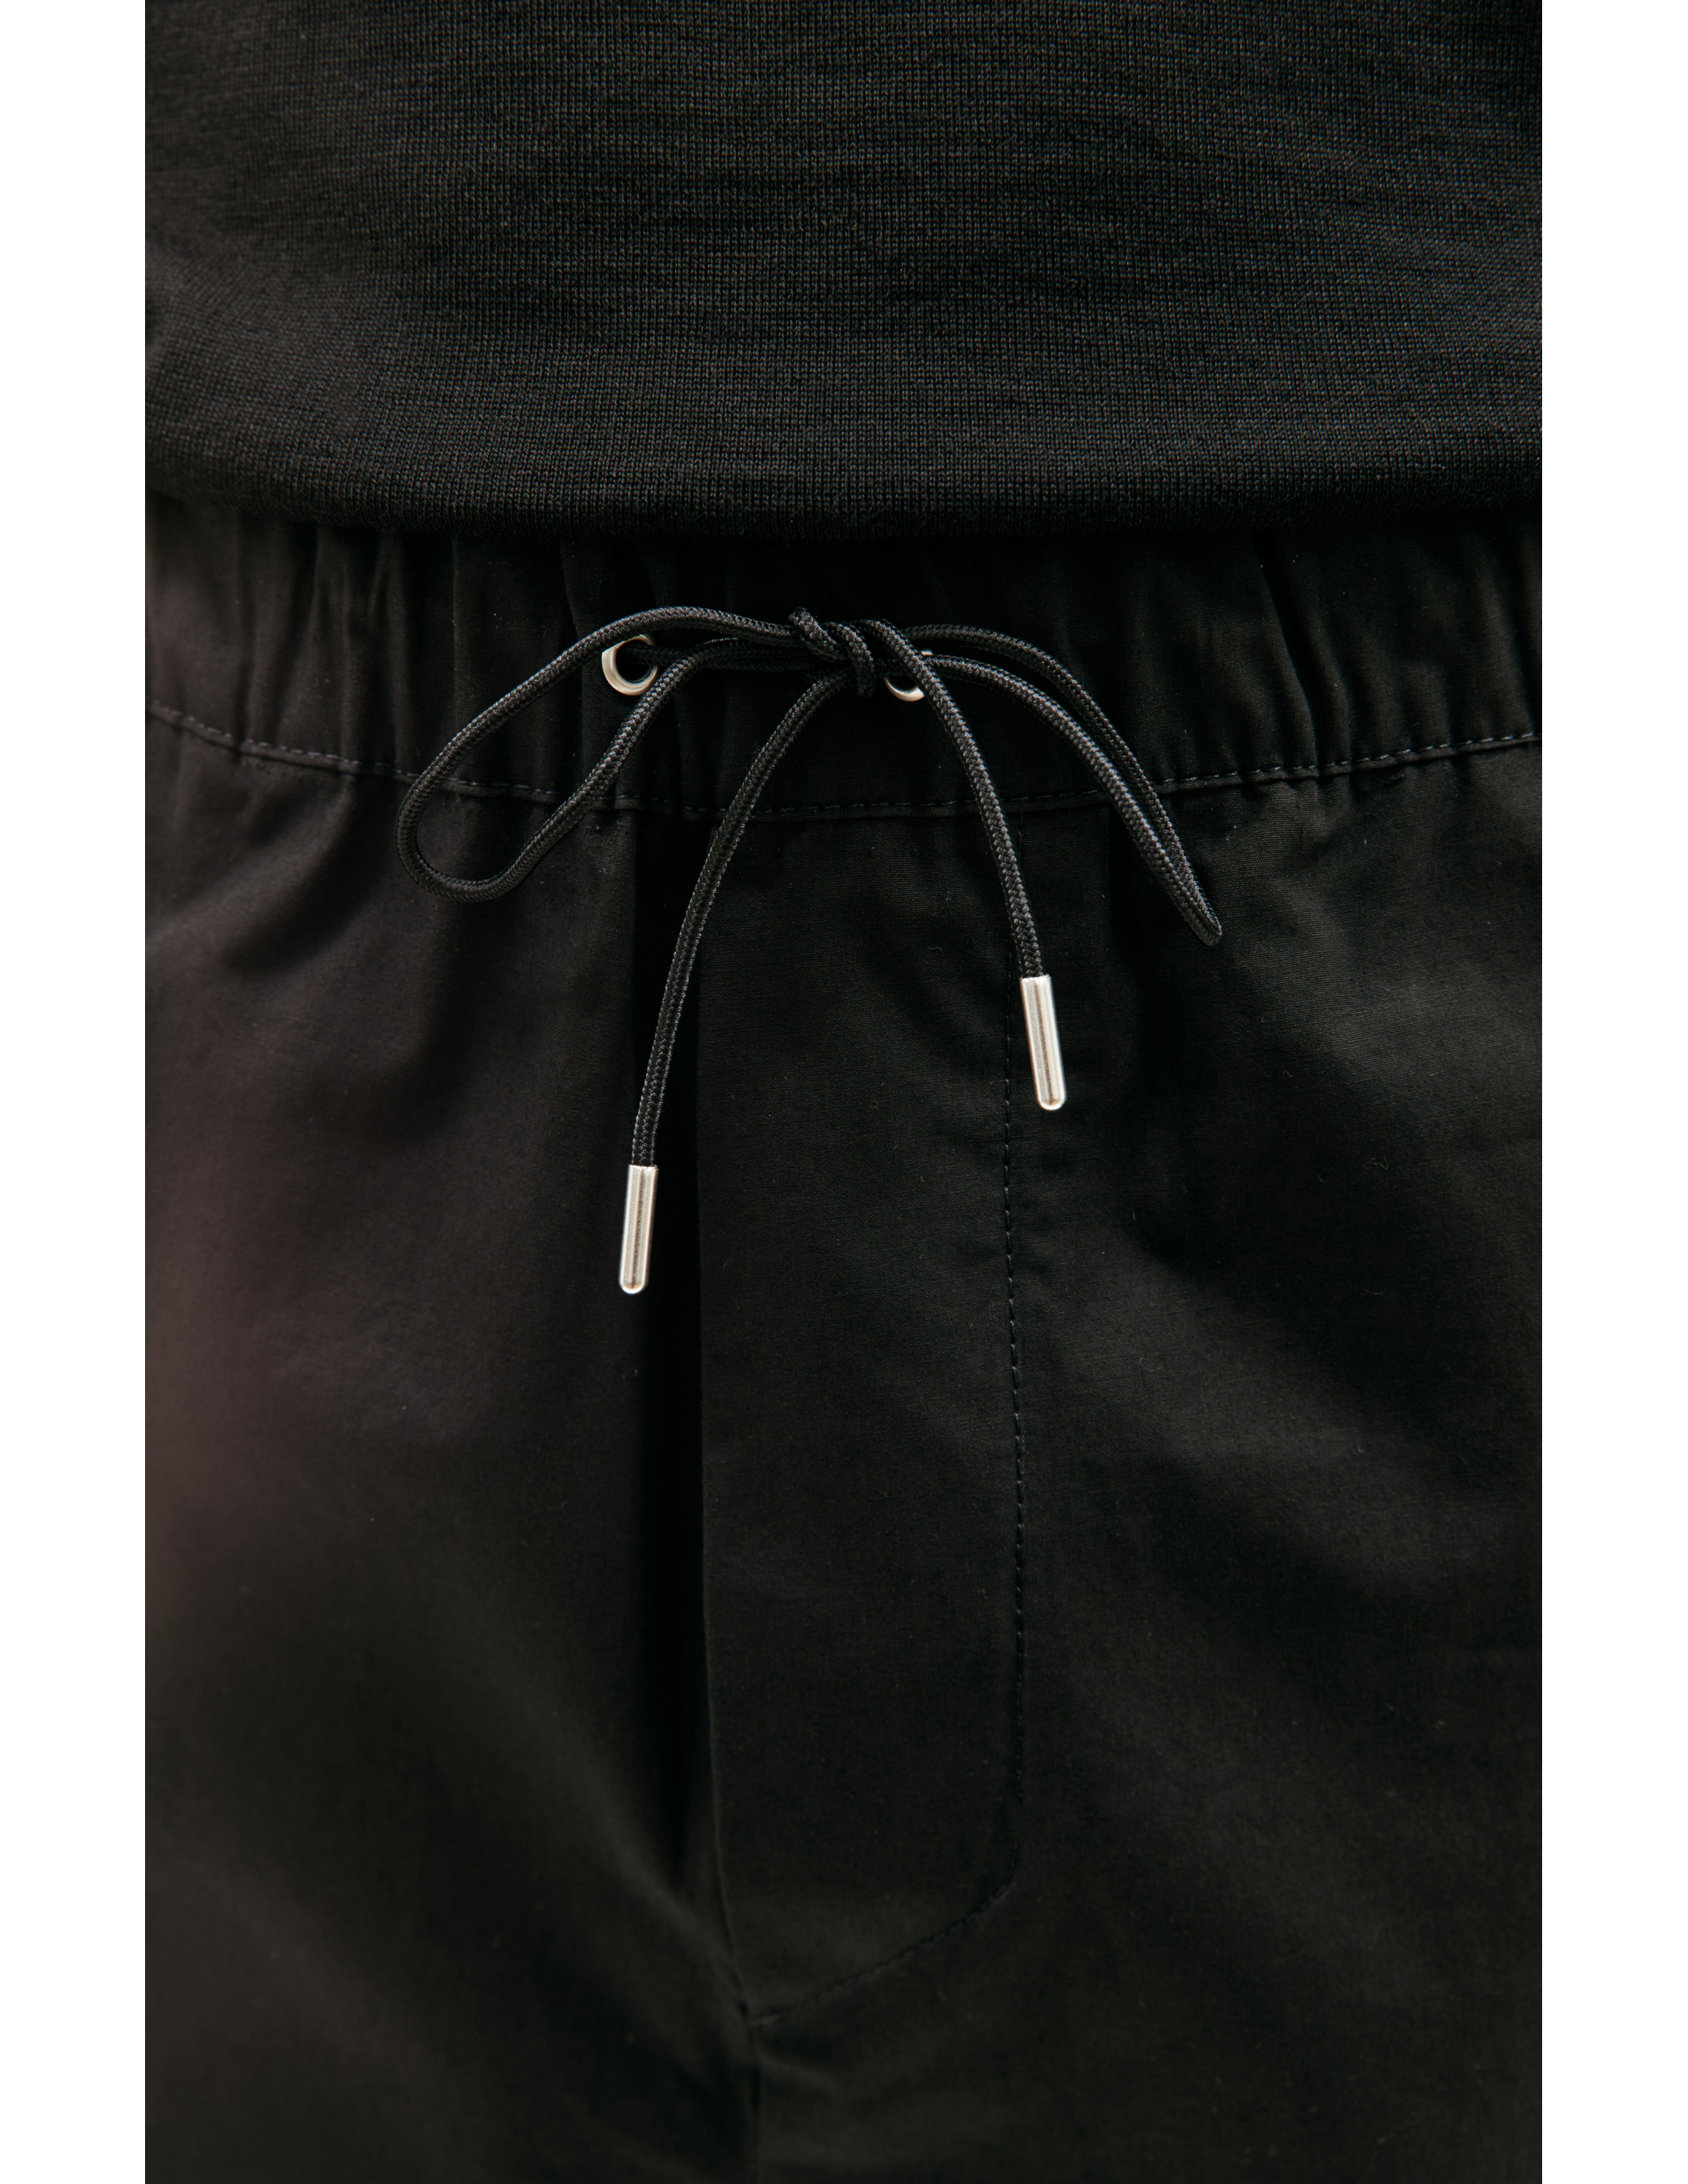 Прямые брюки на резинке OAMC 24E28OAU88/COT00991/001, размер L;XL 24E28OAU88/COT00991/001 - фото 4